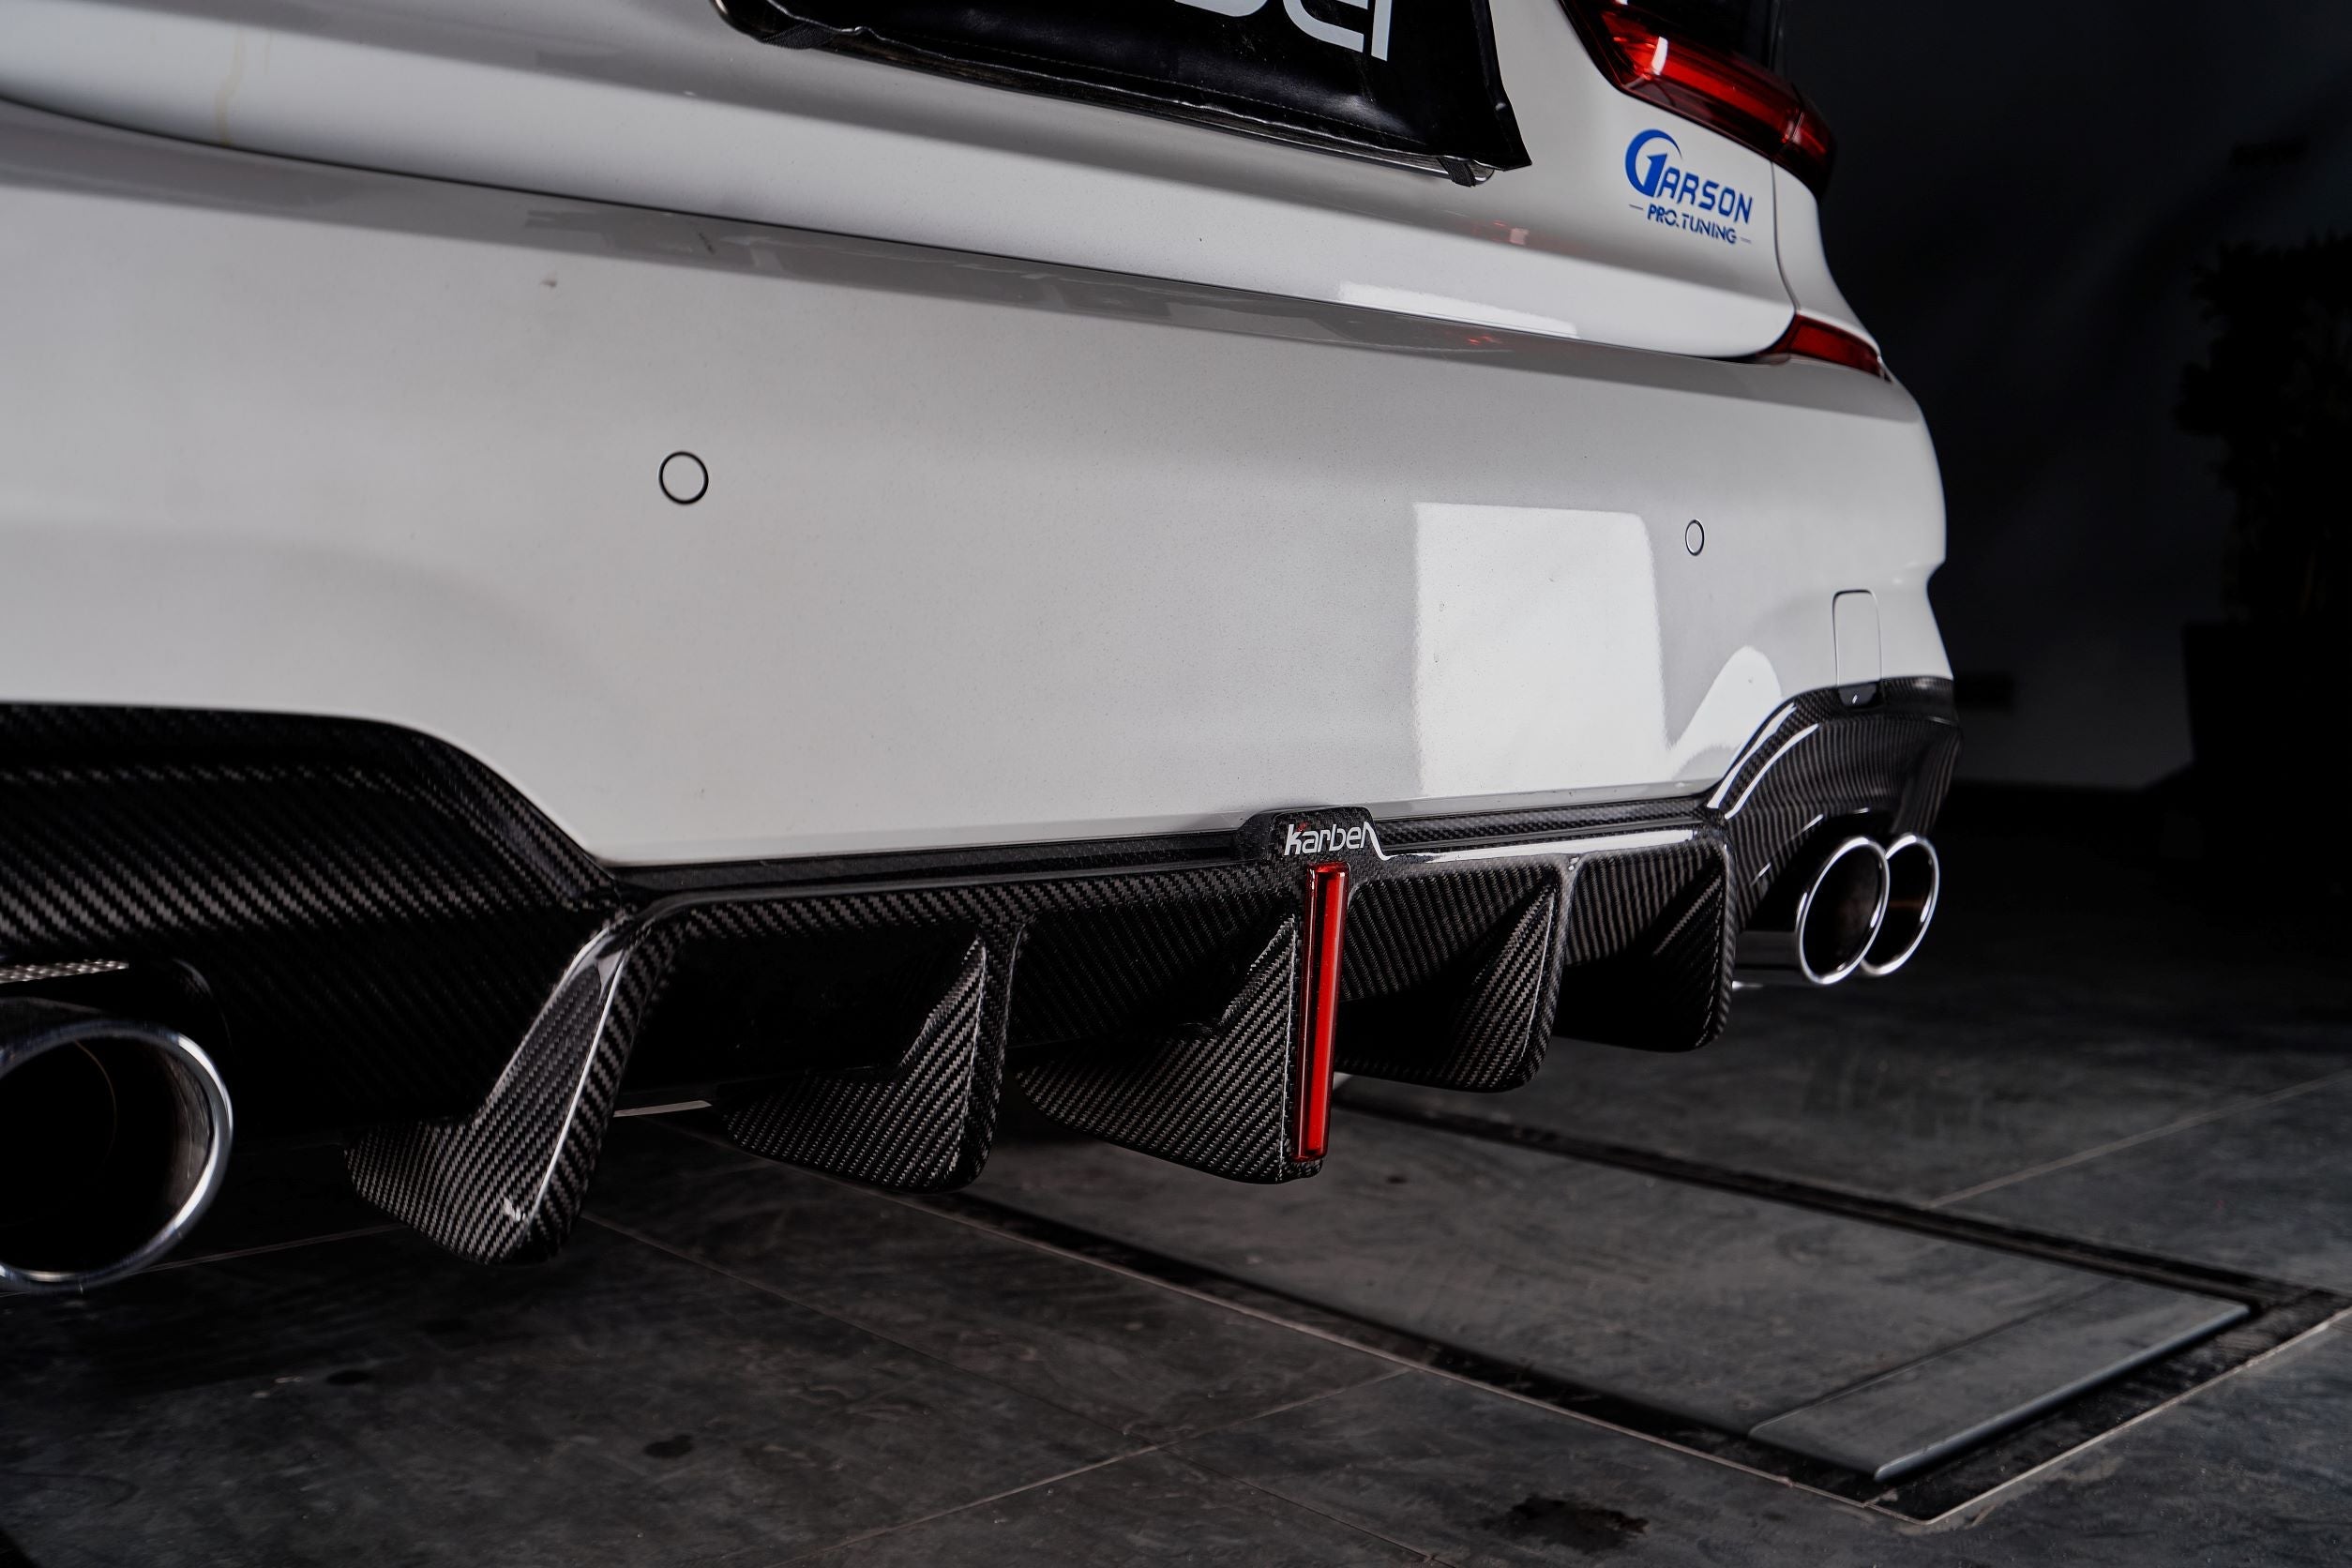 Karbel Carbon Dry Carbon Fiber Rear Diffuser for BMW 3 Series G20 2019-2022